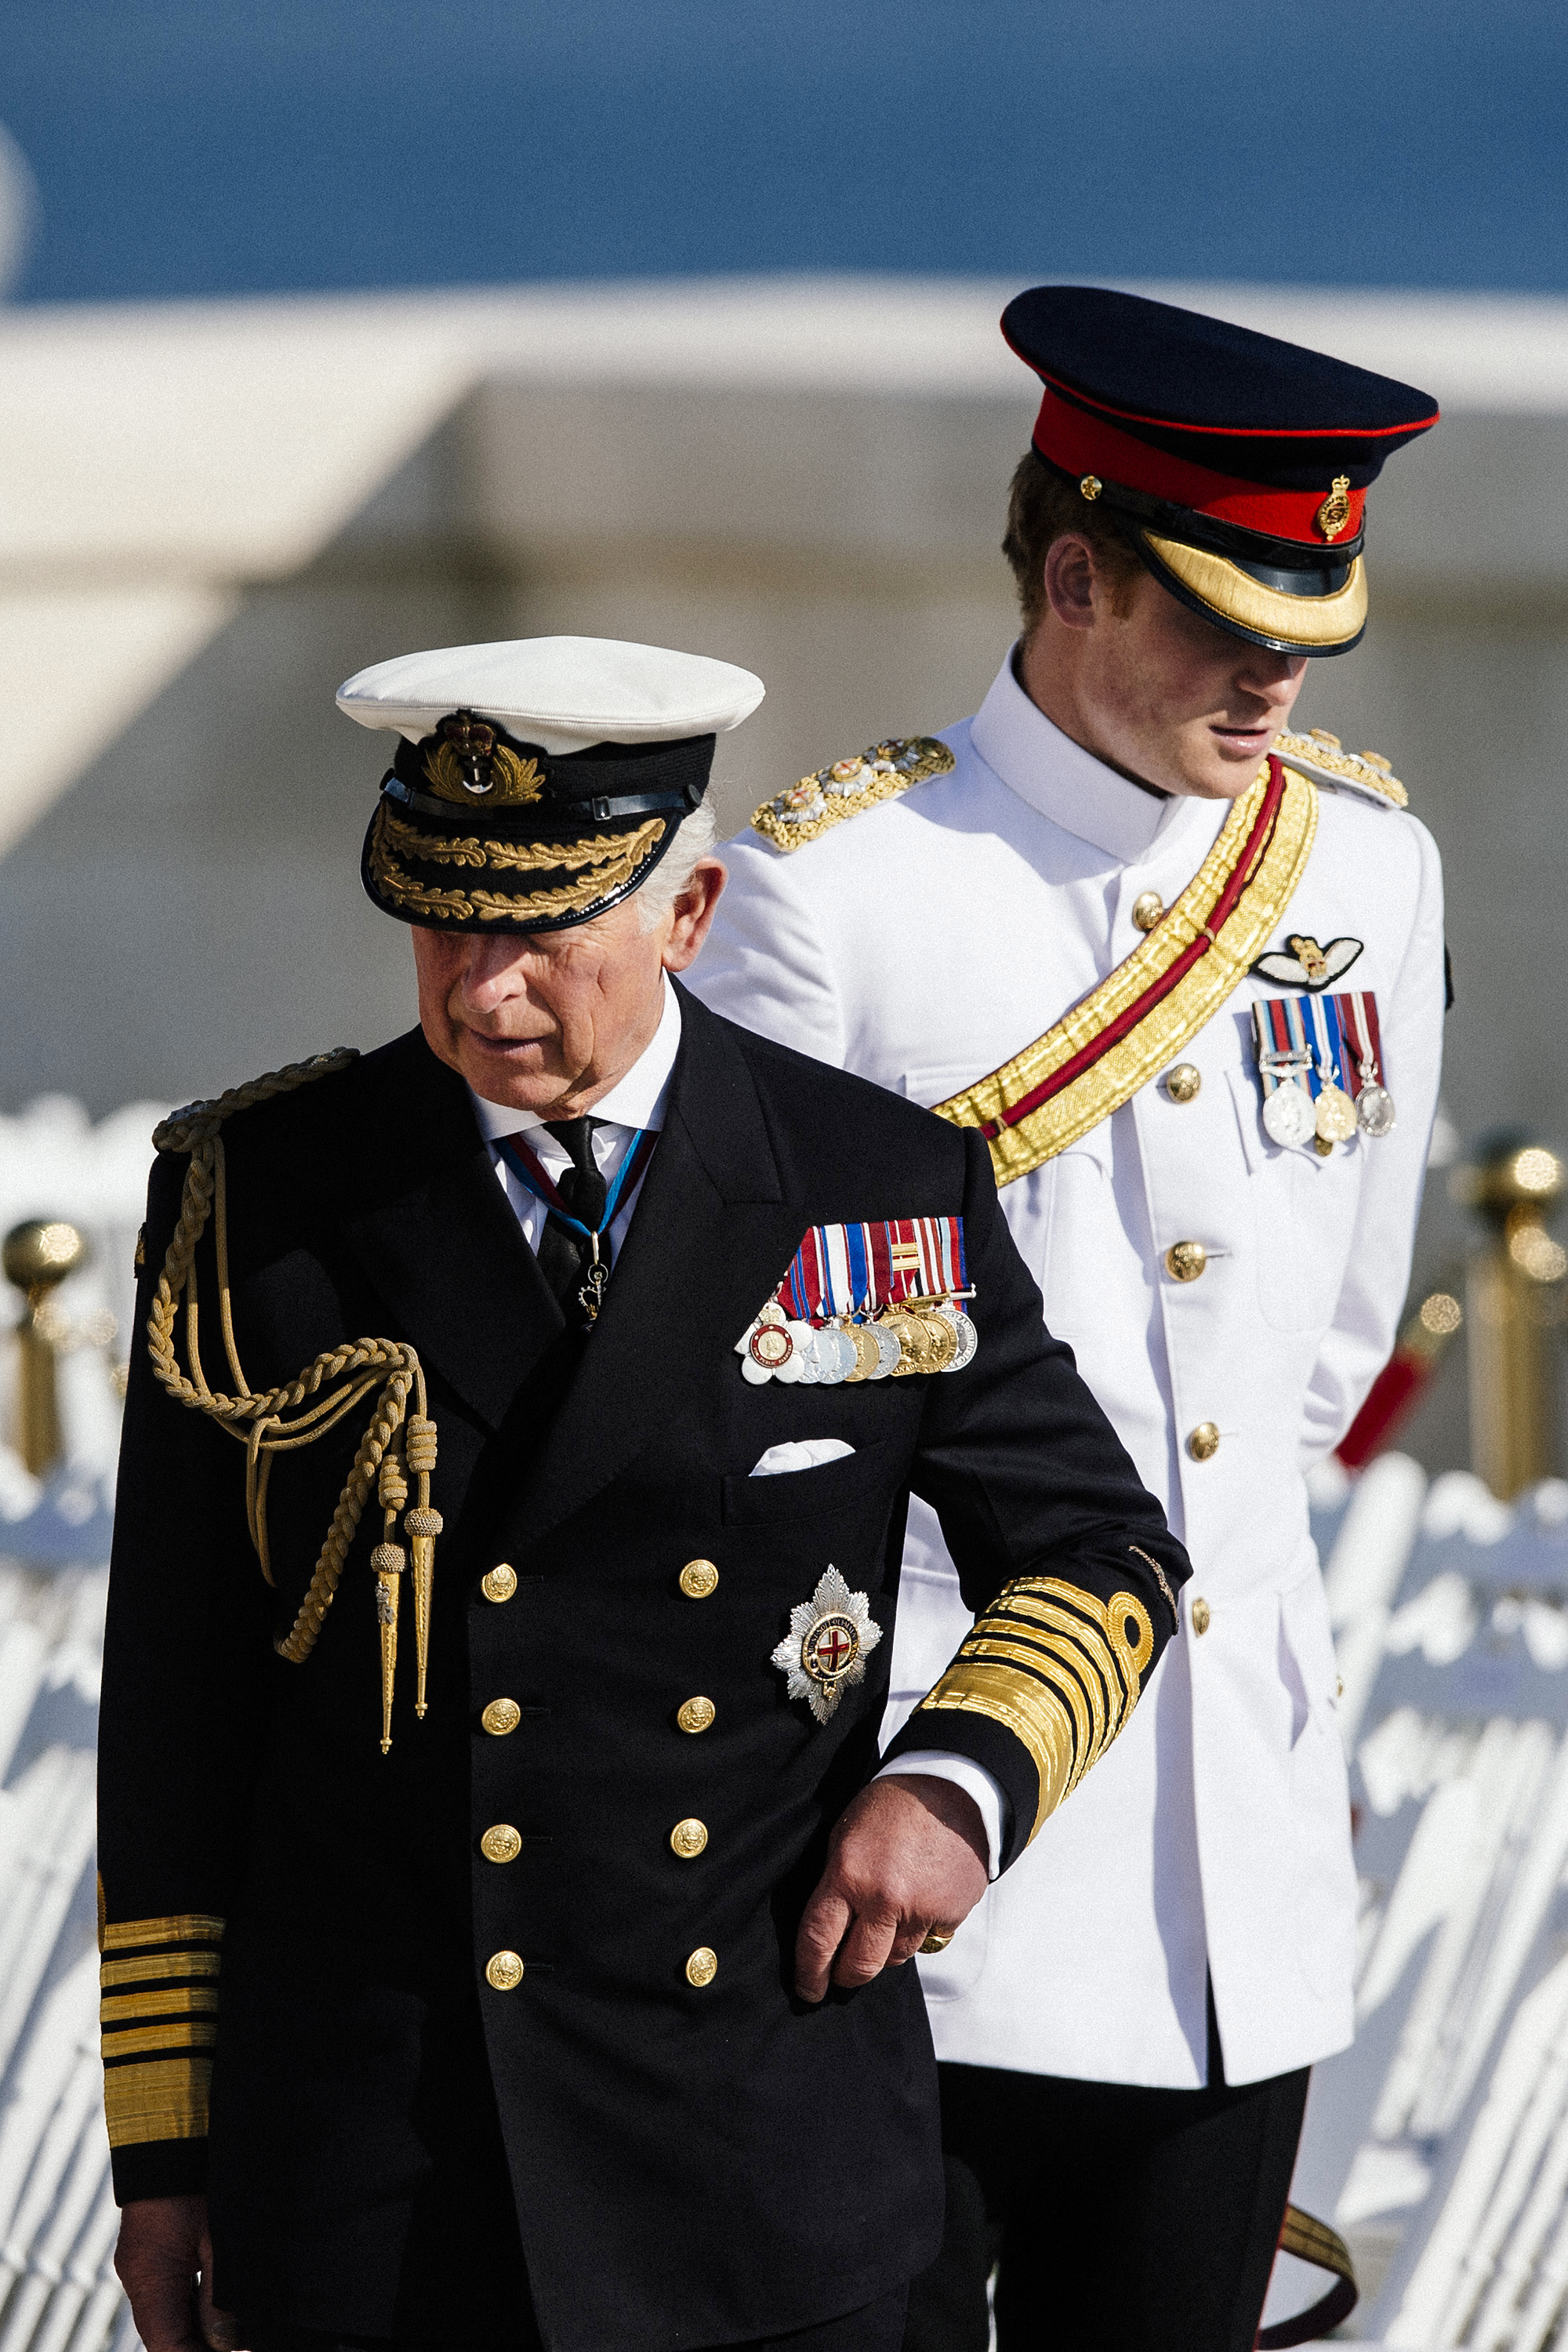 König Charles III. und Prinz Harry bei einer Gedenkfeier zum 100. Jahrestag des Beginns der Schlacht von Gallipoli auf der Halbinsel Gallipoli in der Türkei am 24. April 2015 | Quelle: Getty Images